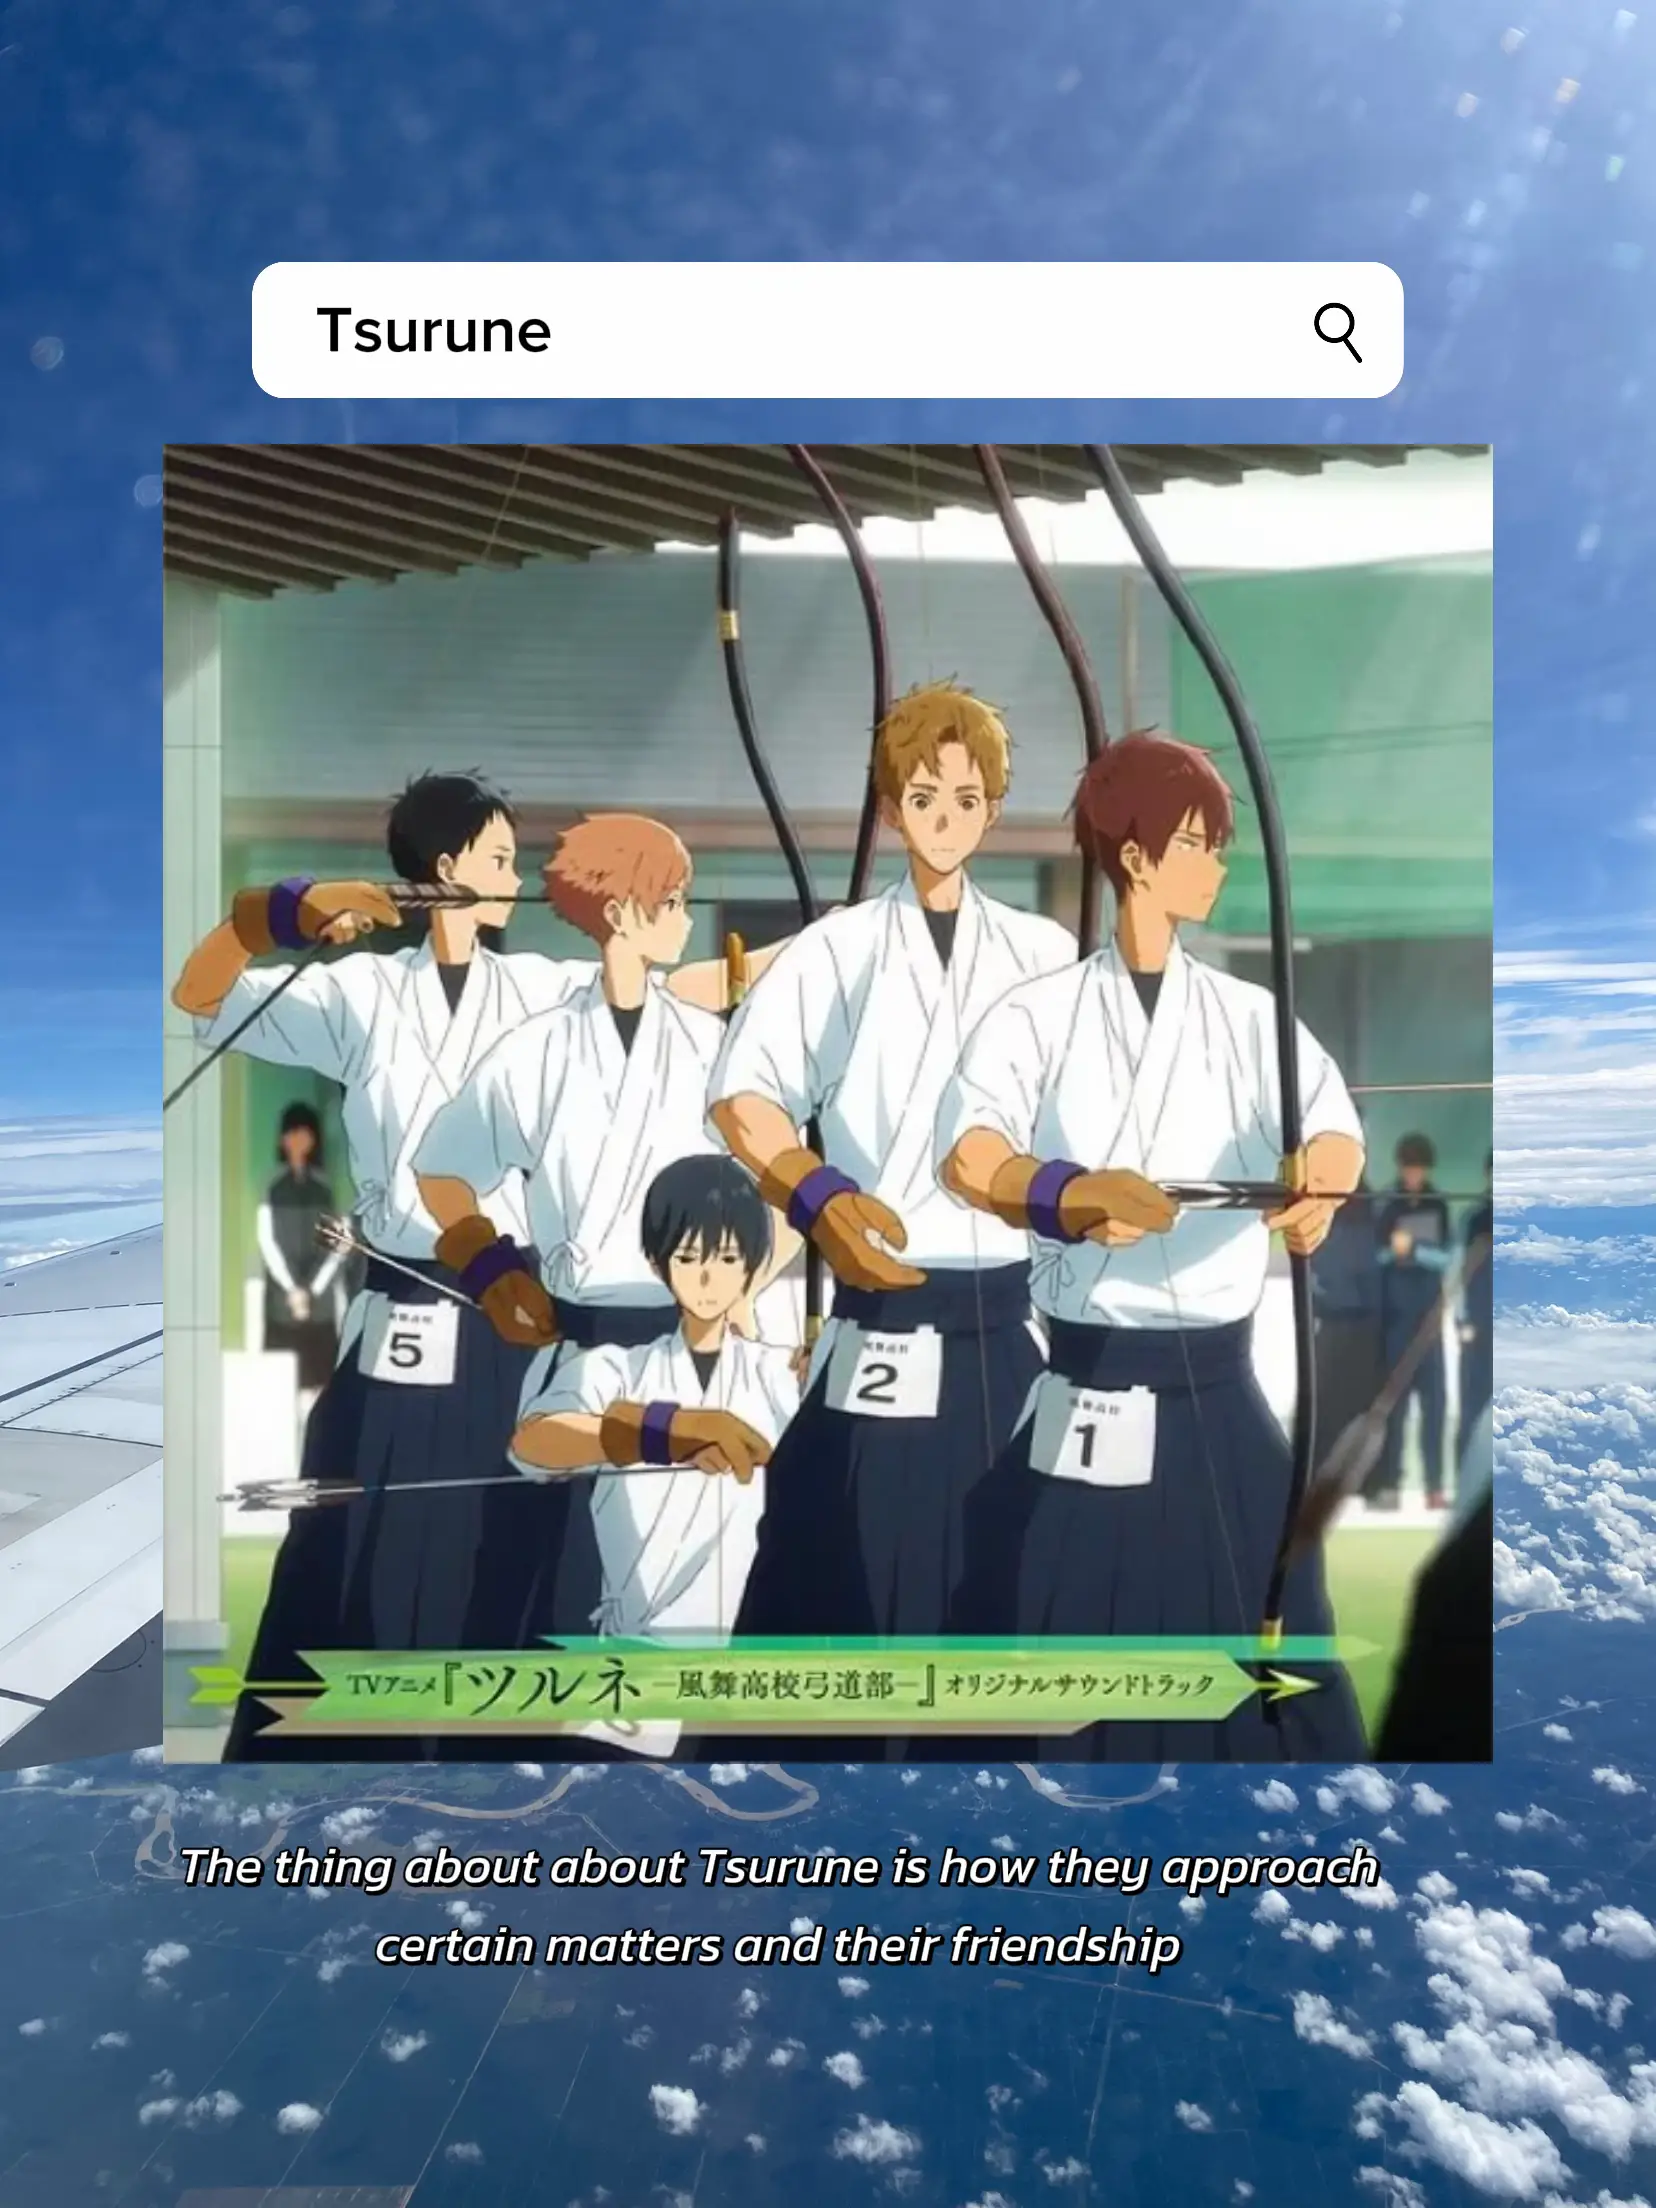 Tsurune: A Hidden Gem of the Sports Genre